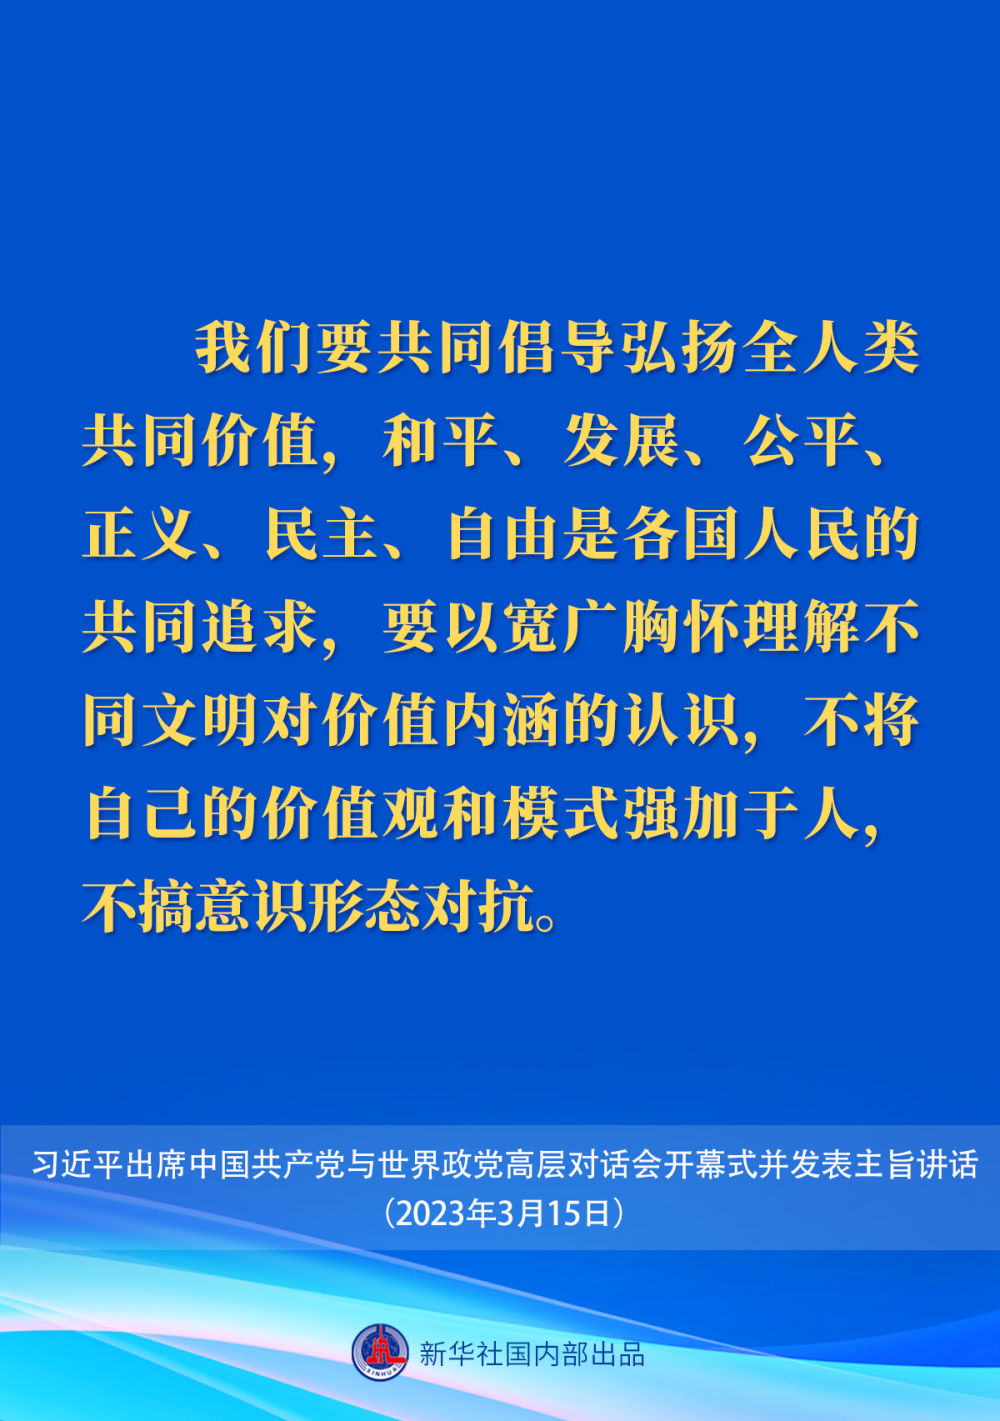 习近平在中国共产党与世界政党高层对话会上的主旨讲话要点9.jpeg